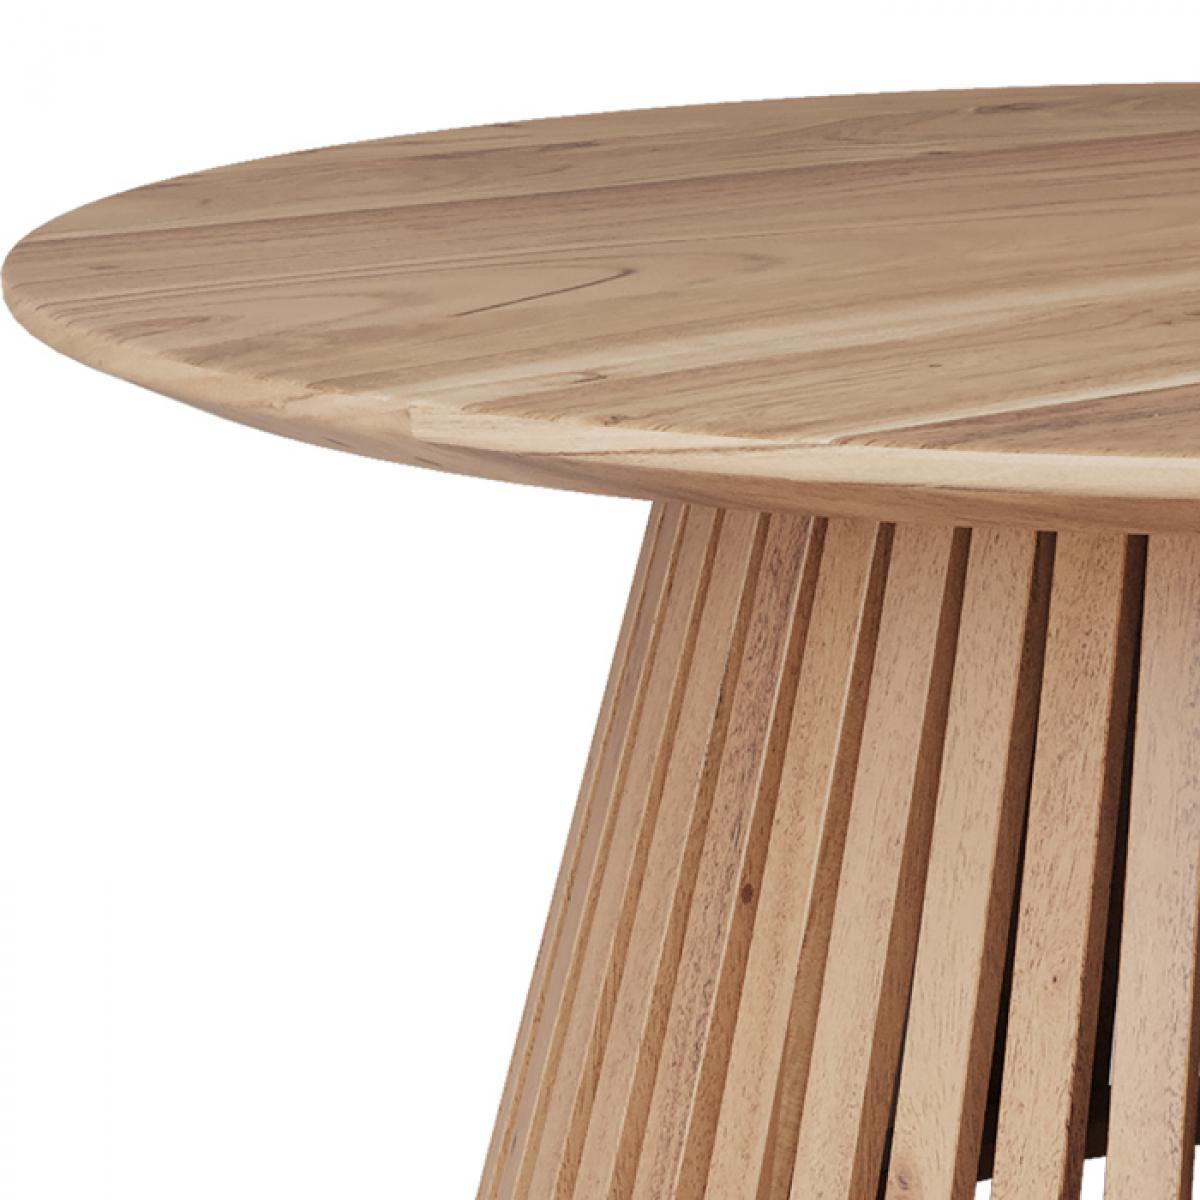 Table basse Képès bois clair D80 cm